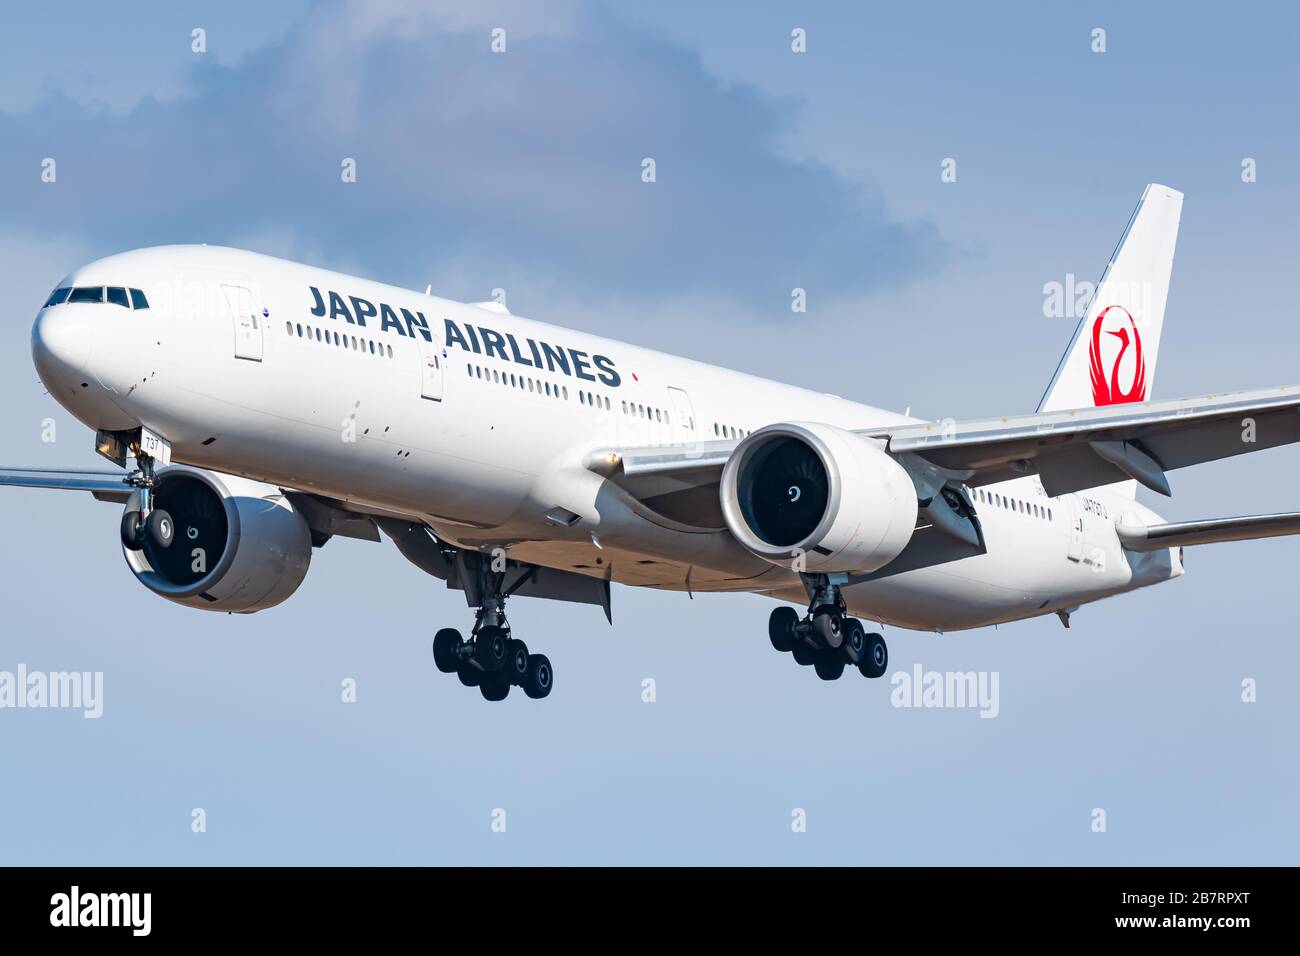 New York, USA - 29. Februar 2020: Japan Airlines Boeing 777 Flugzeug auf dem New Yorker John F. Kennedy Airport (JFK) in den USA. Boeing ist ein Flugzeugmanu Stockfoto